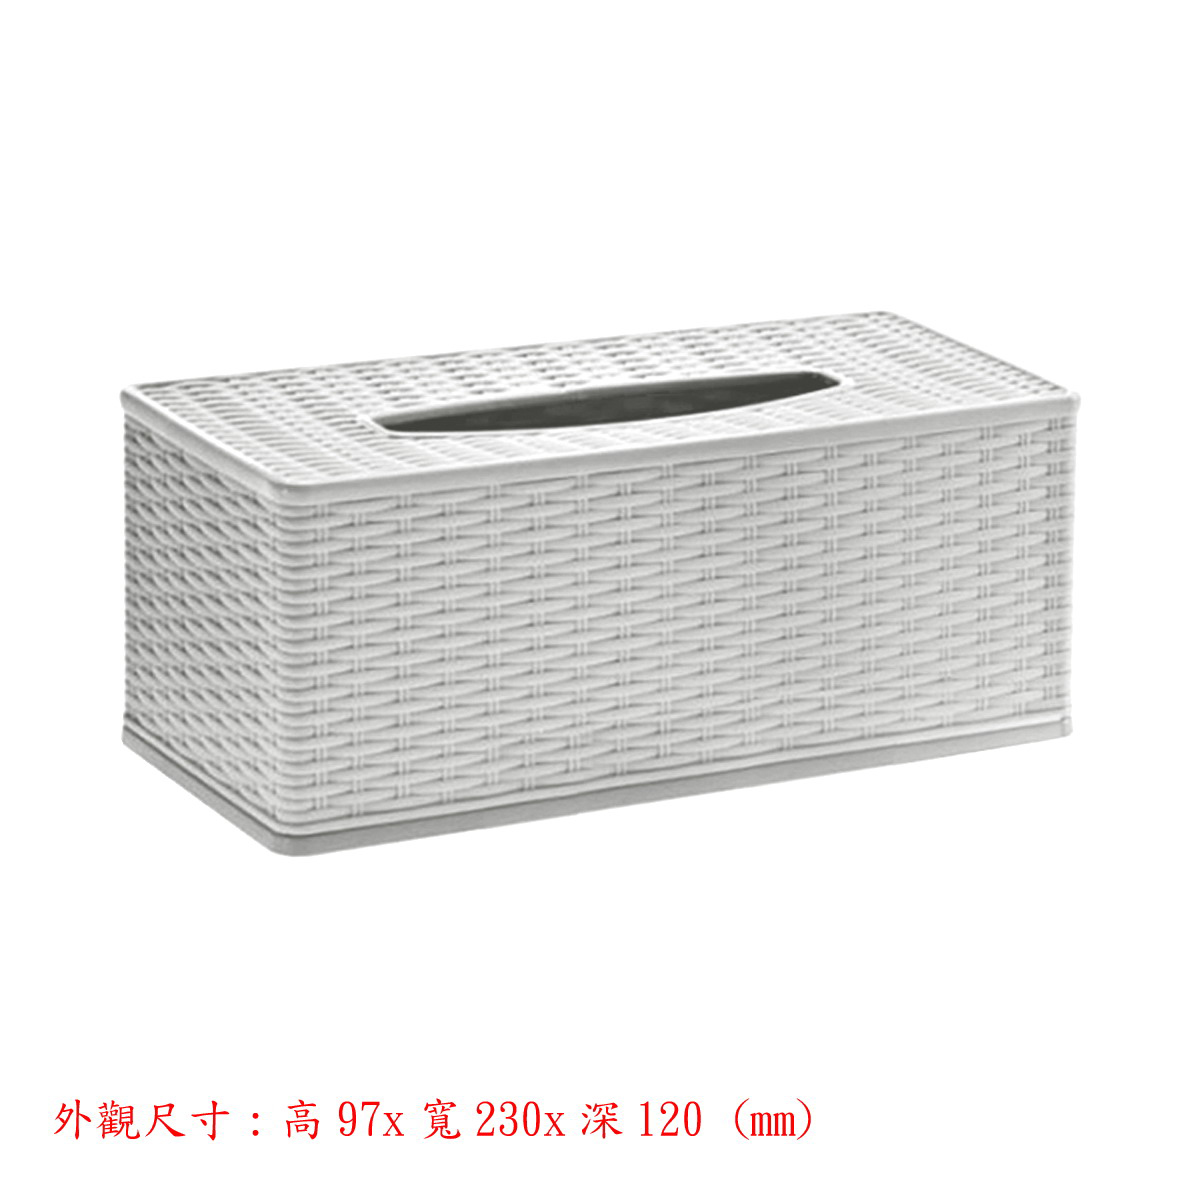 抽取式面紙盒-籐編紋(白色)